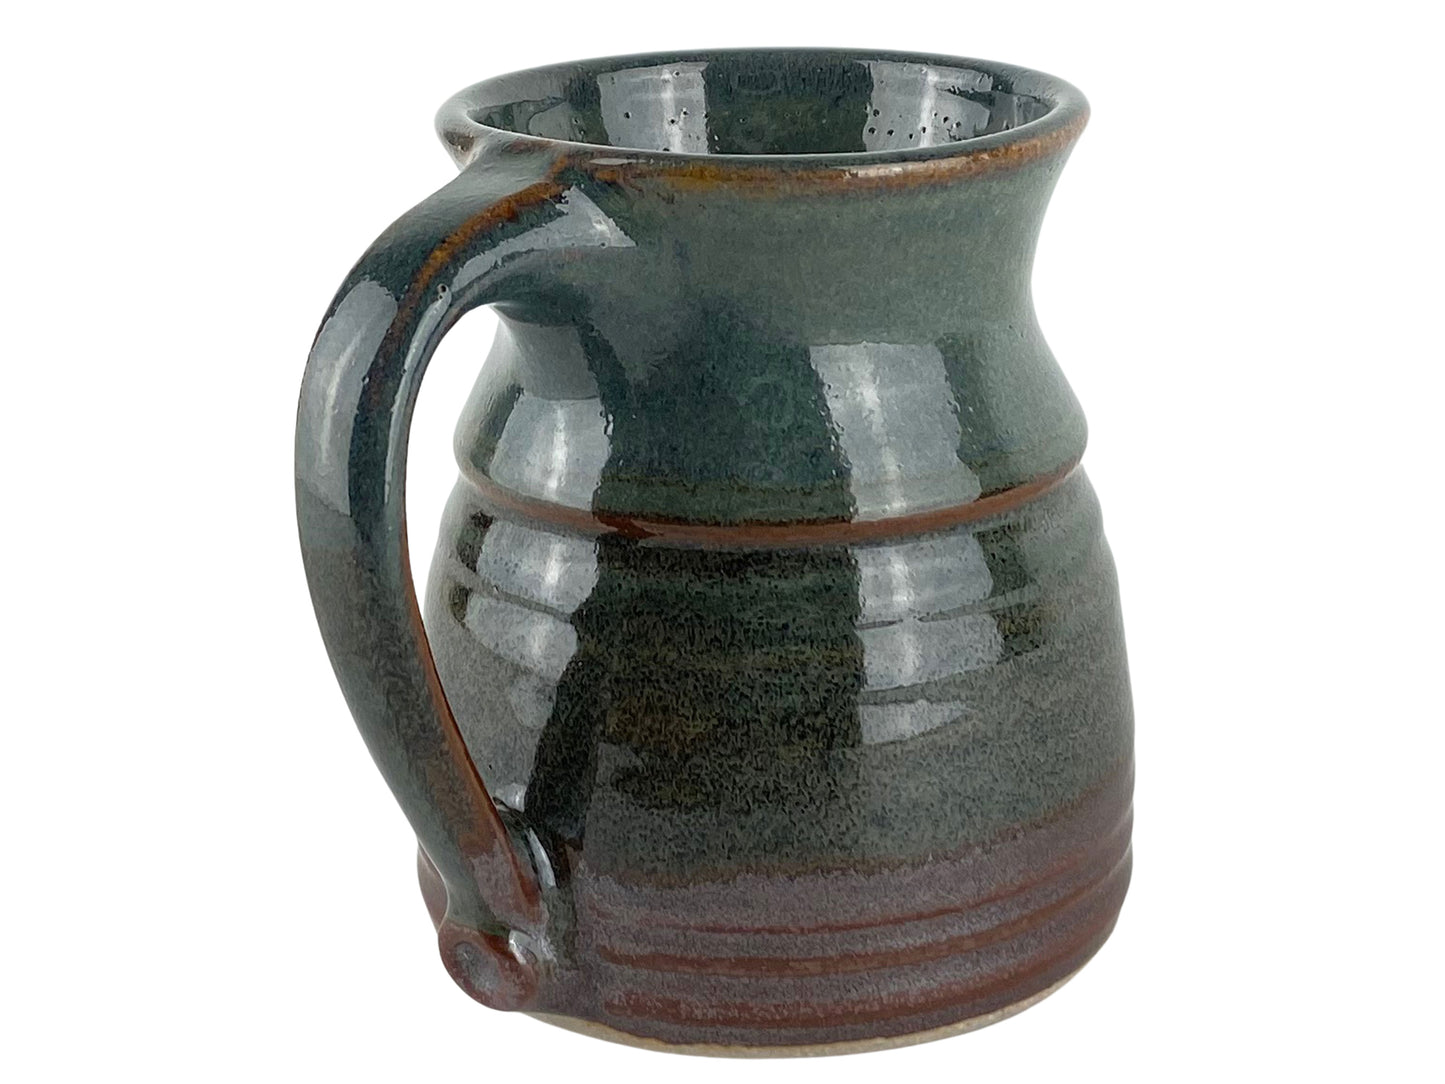 14 oz. Stoneware Coffee Mug